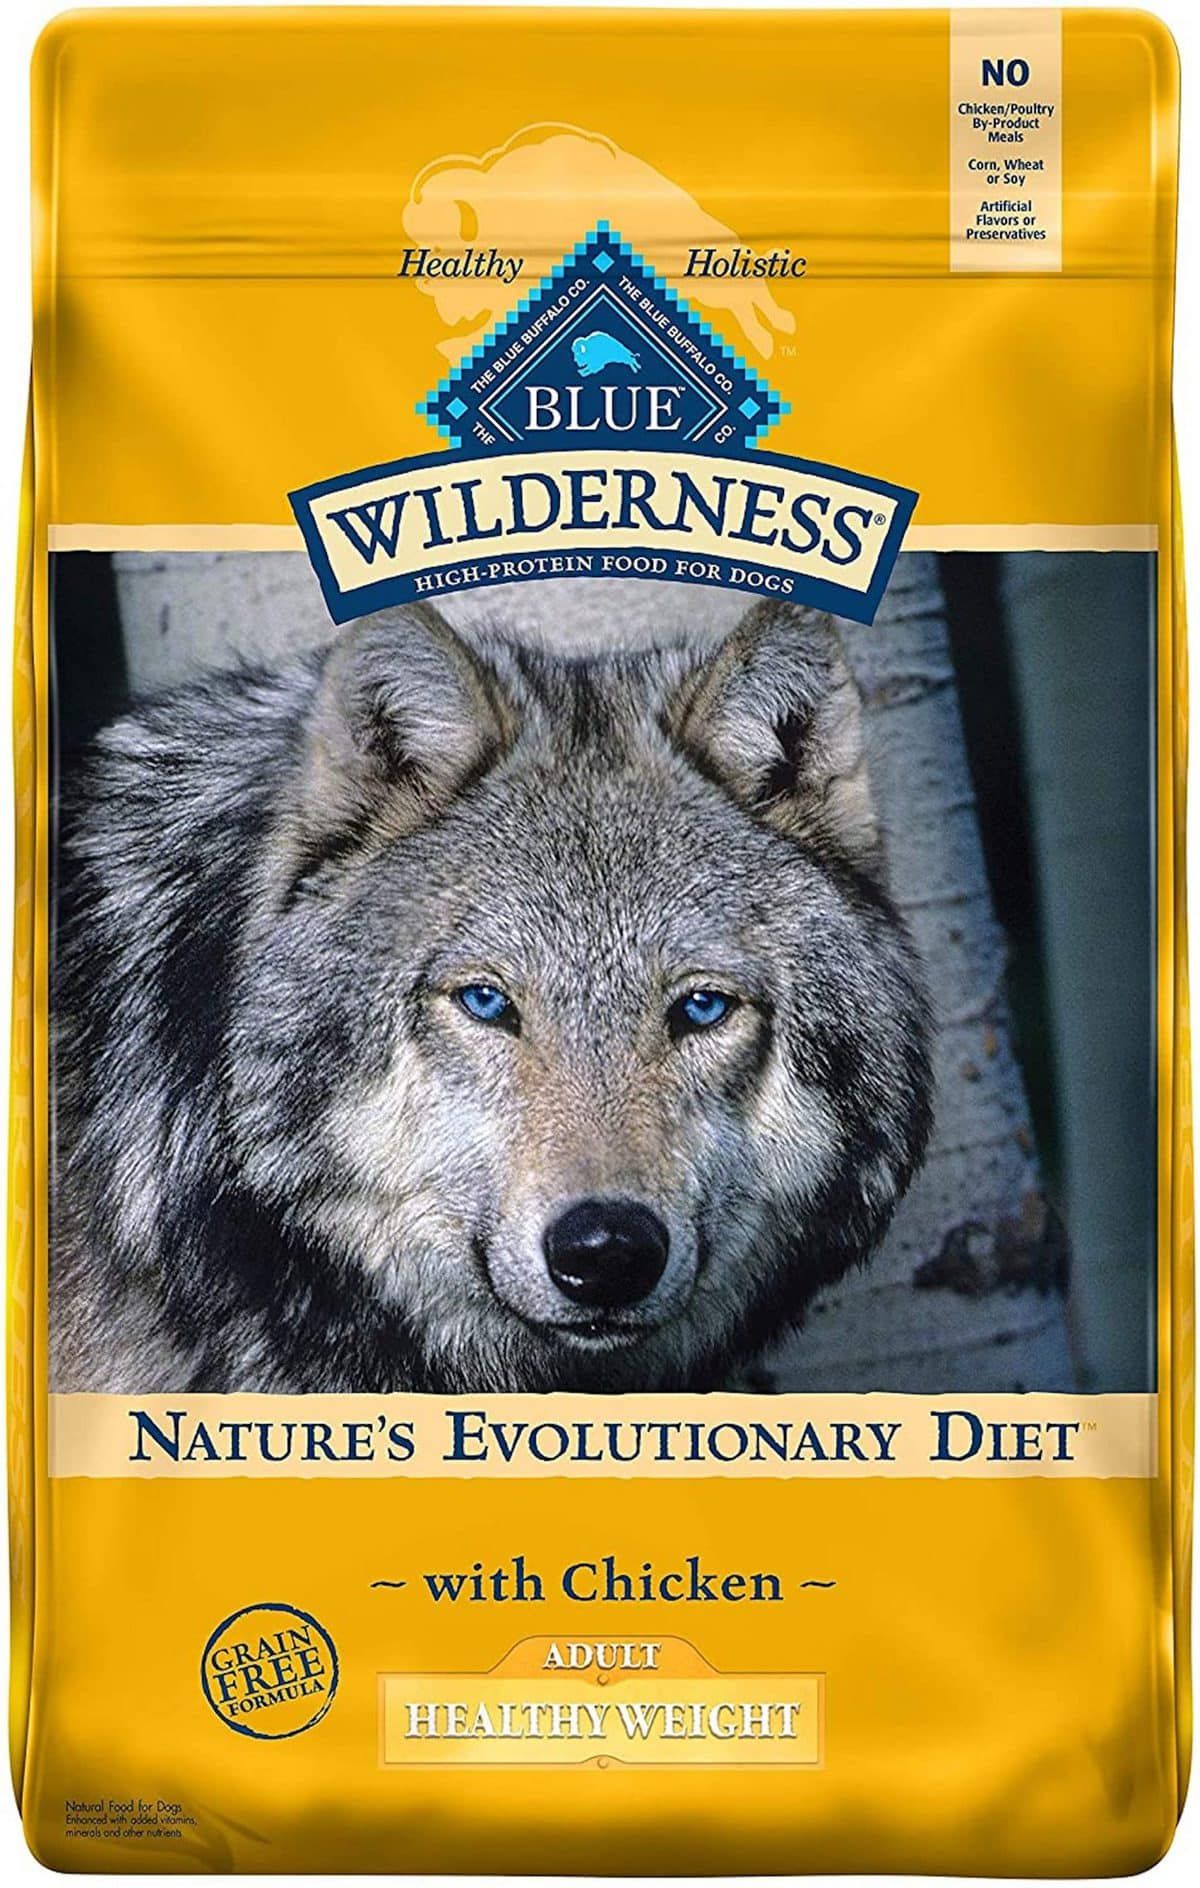 Comida para cães com peso saudável no Blue Wilderness